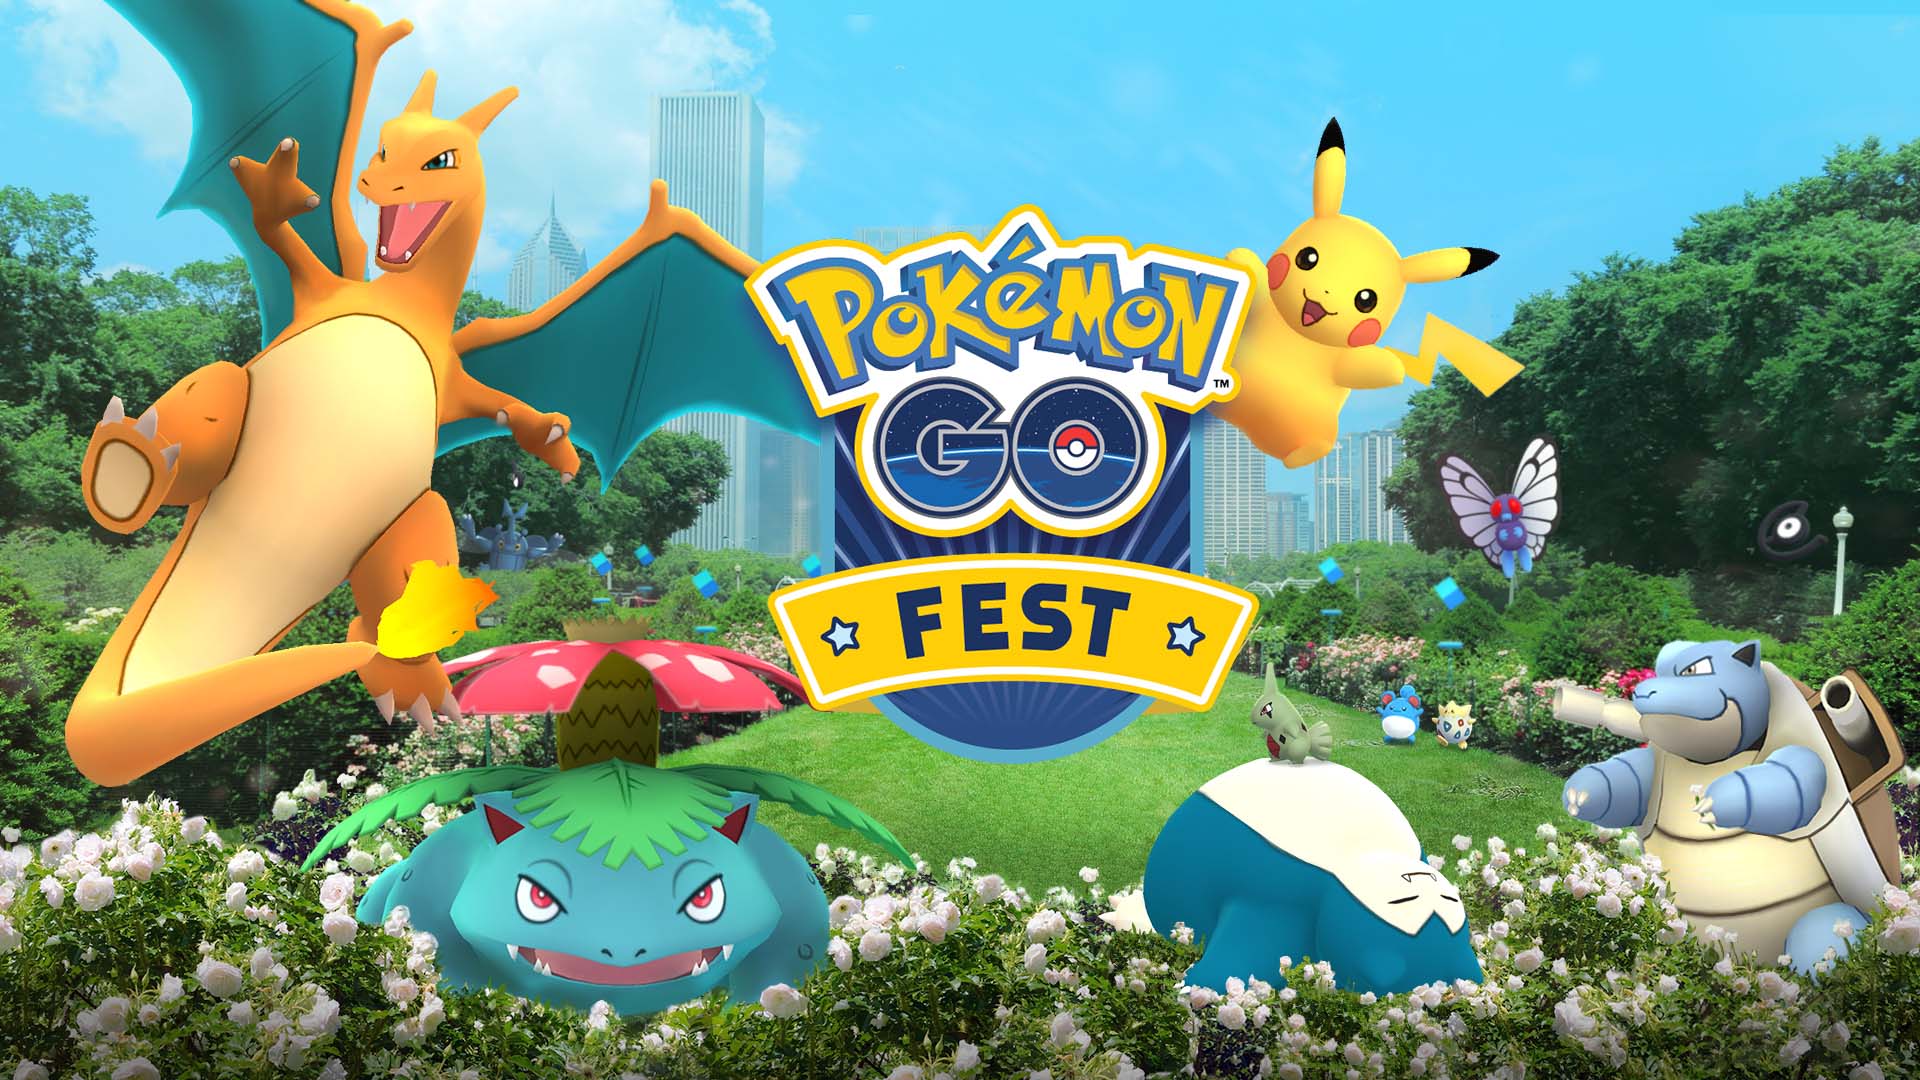 Pokémon Go après le fiasco de Chicago, Niantic repousse des festivals